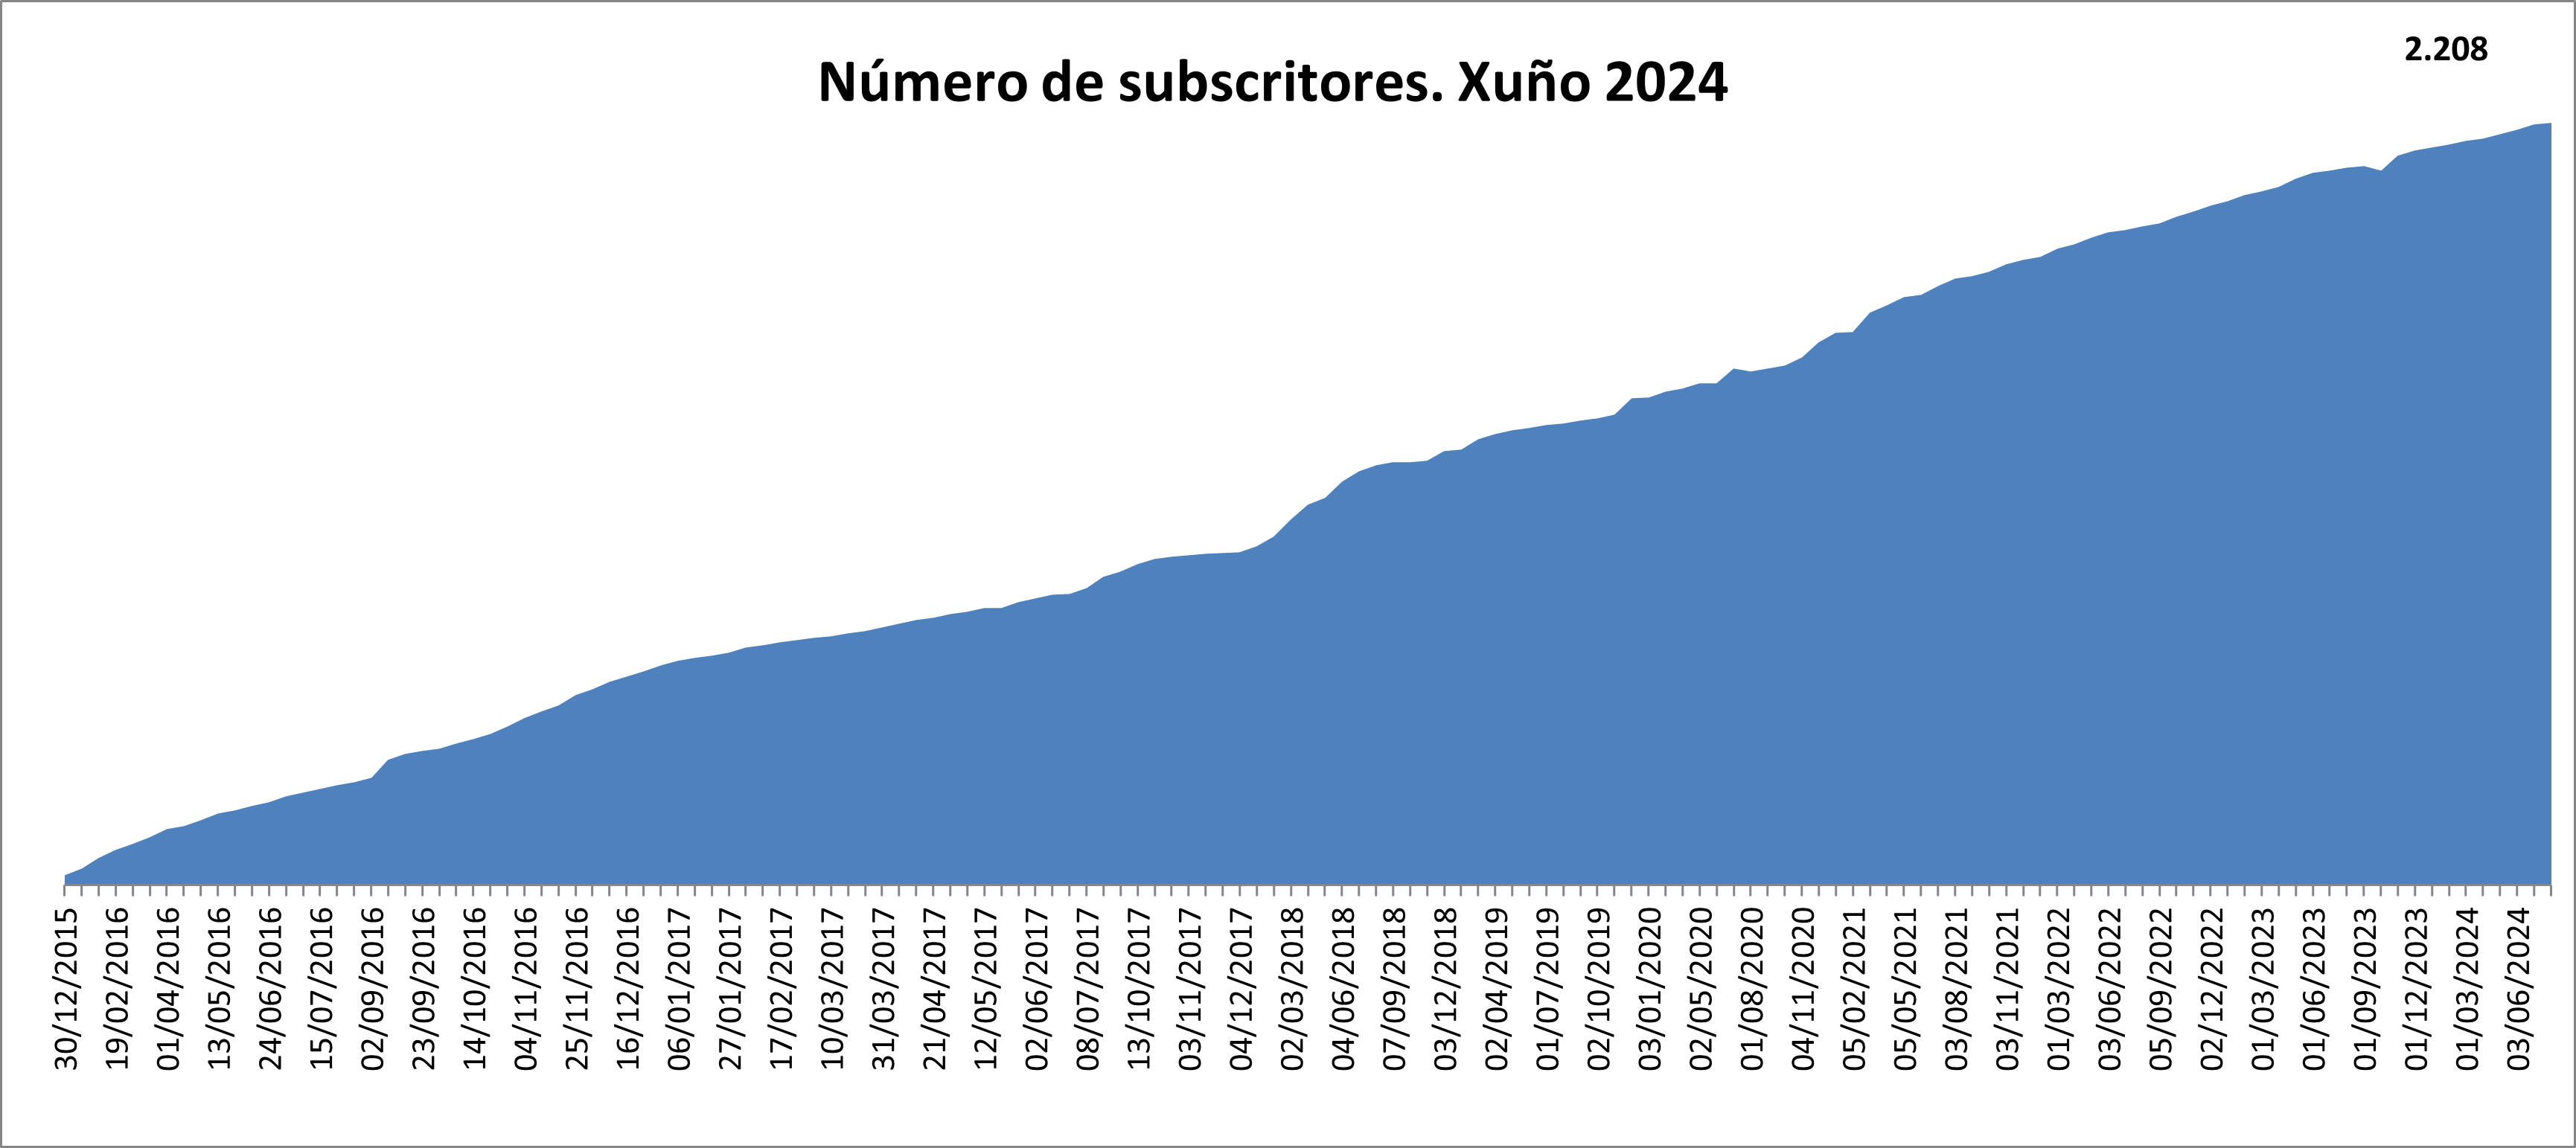  Gráfico do número de subscritores aos informes de interese